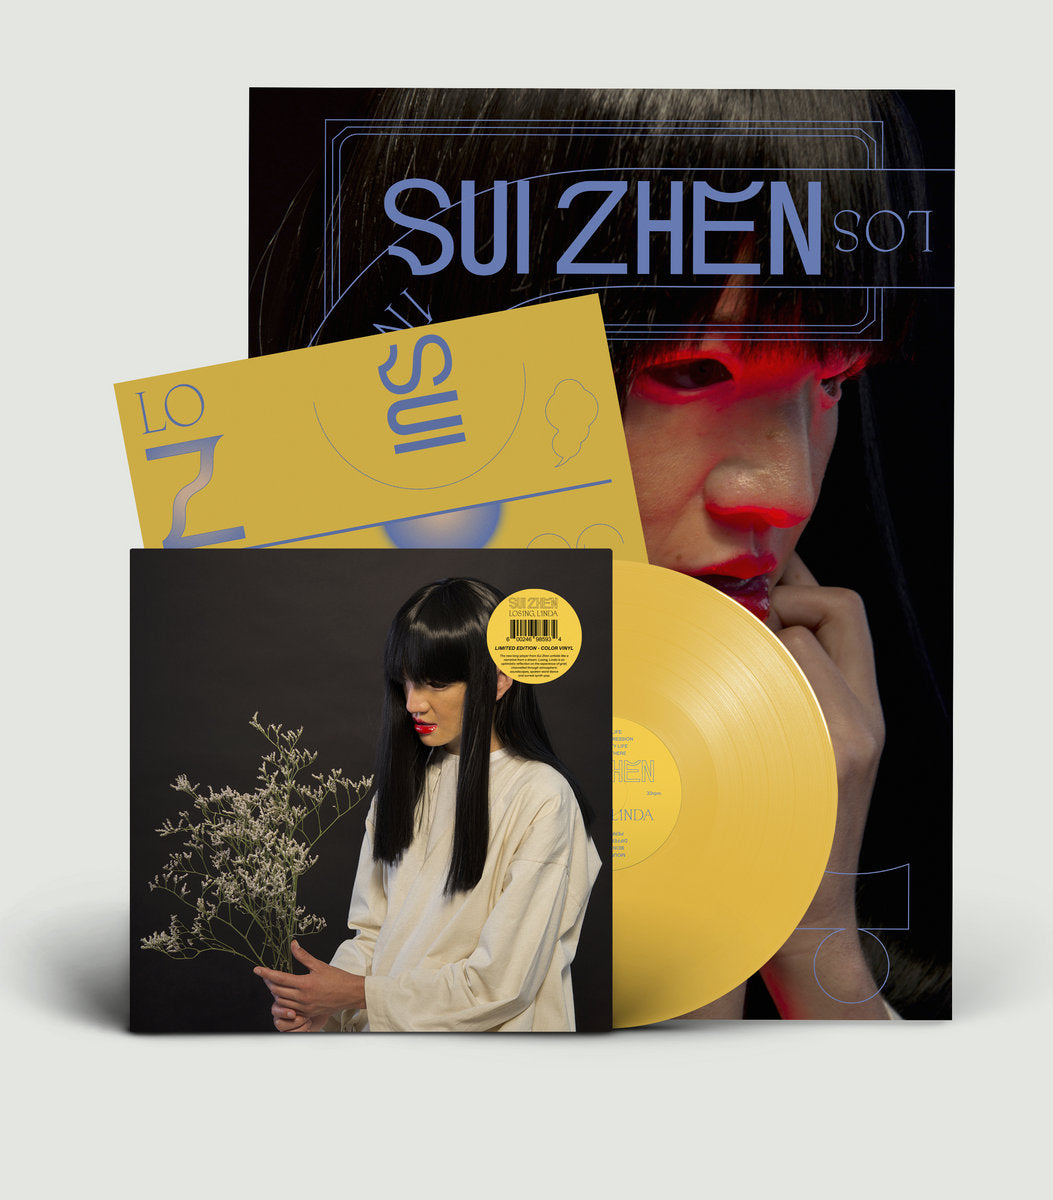 Sui Zhen - Losing, Linda [Yellow Vinyl Lmtd Ed]